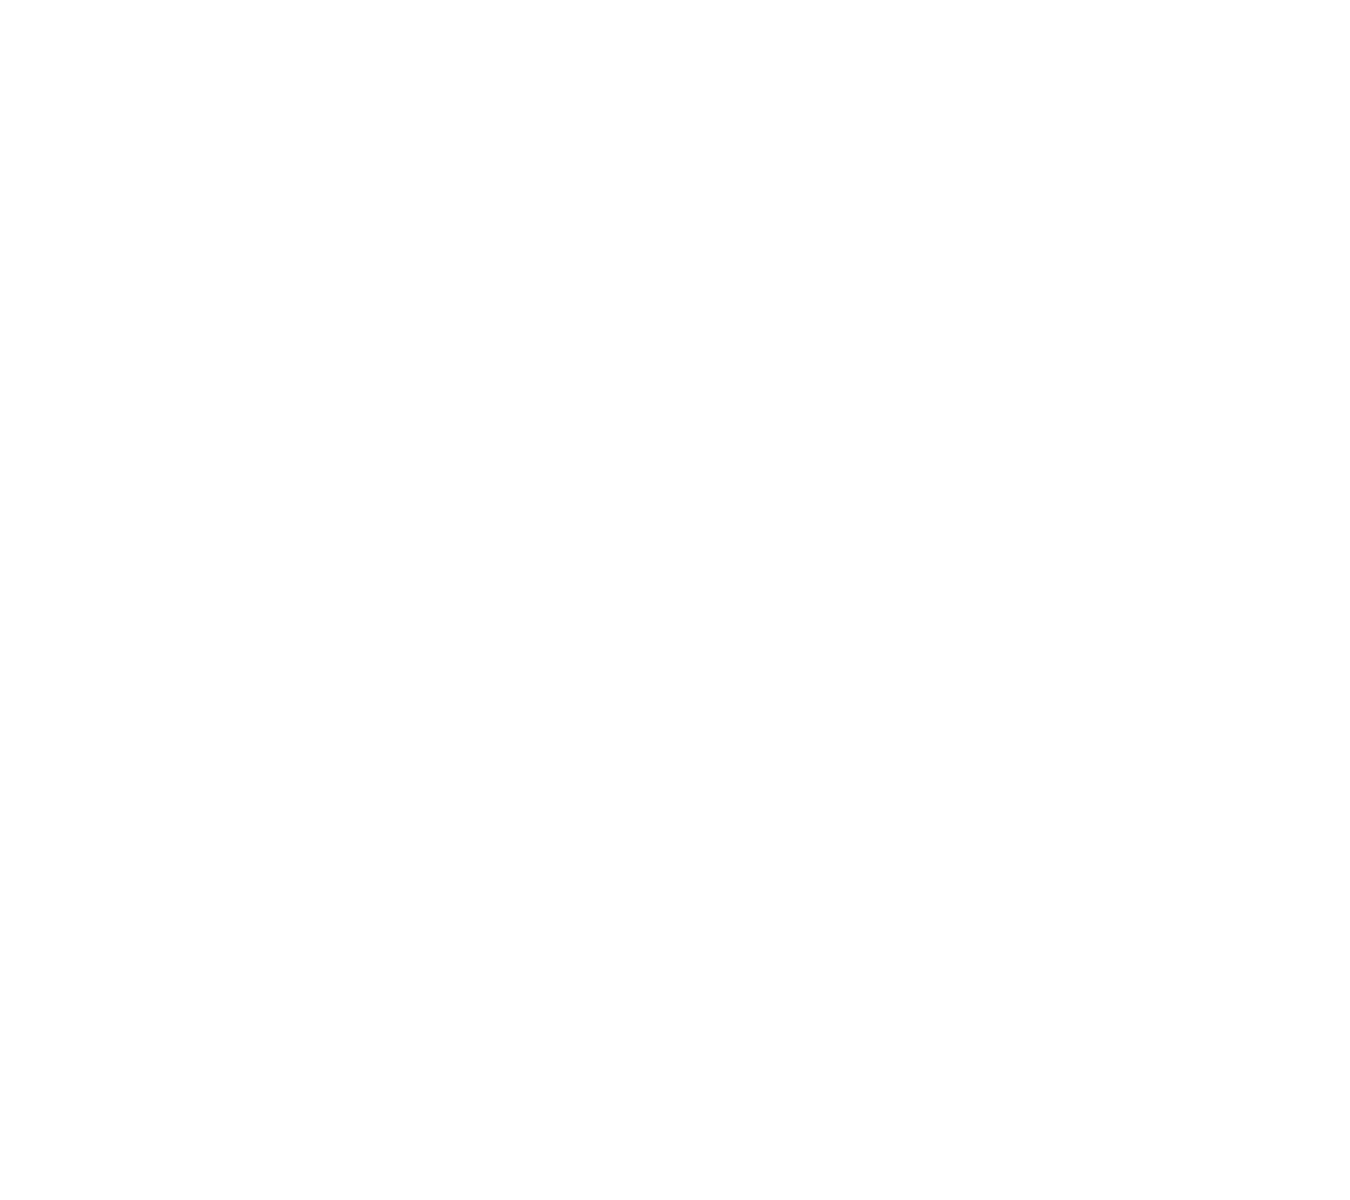 Druid City Derby